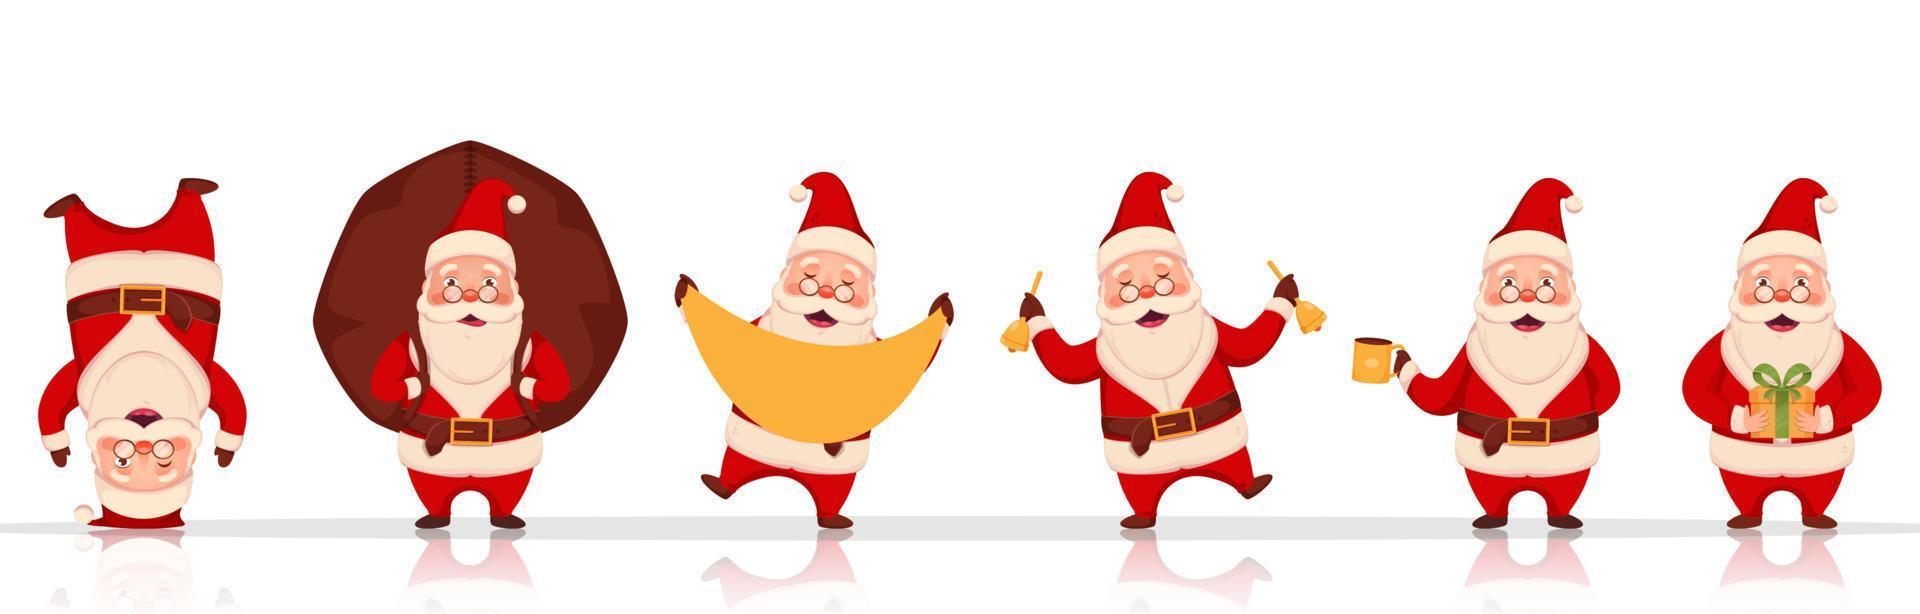 heiter Santa claus Charakter im anders posiert mit schwer Sack, Geschenk Box und klimpern Glocken auf Weiß Hintergrund. vektor